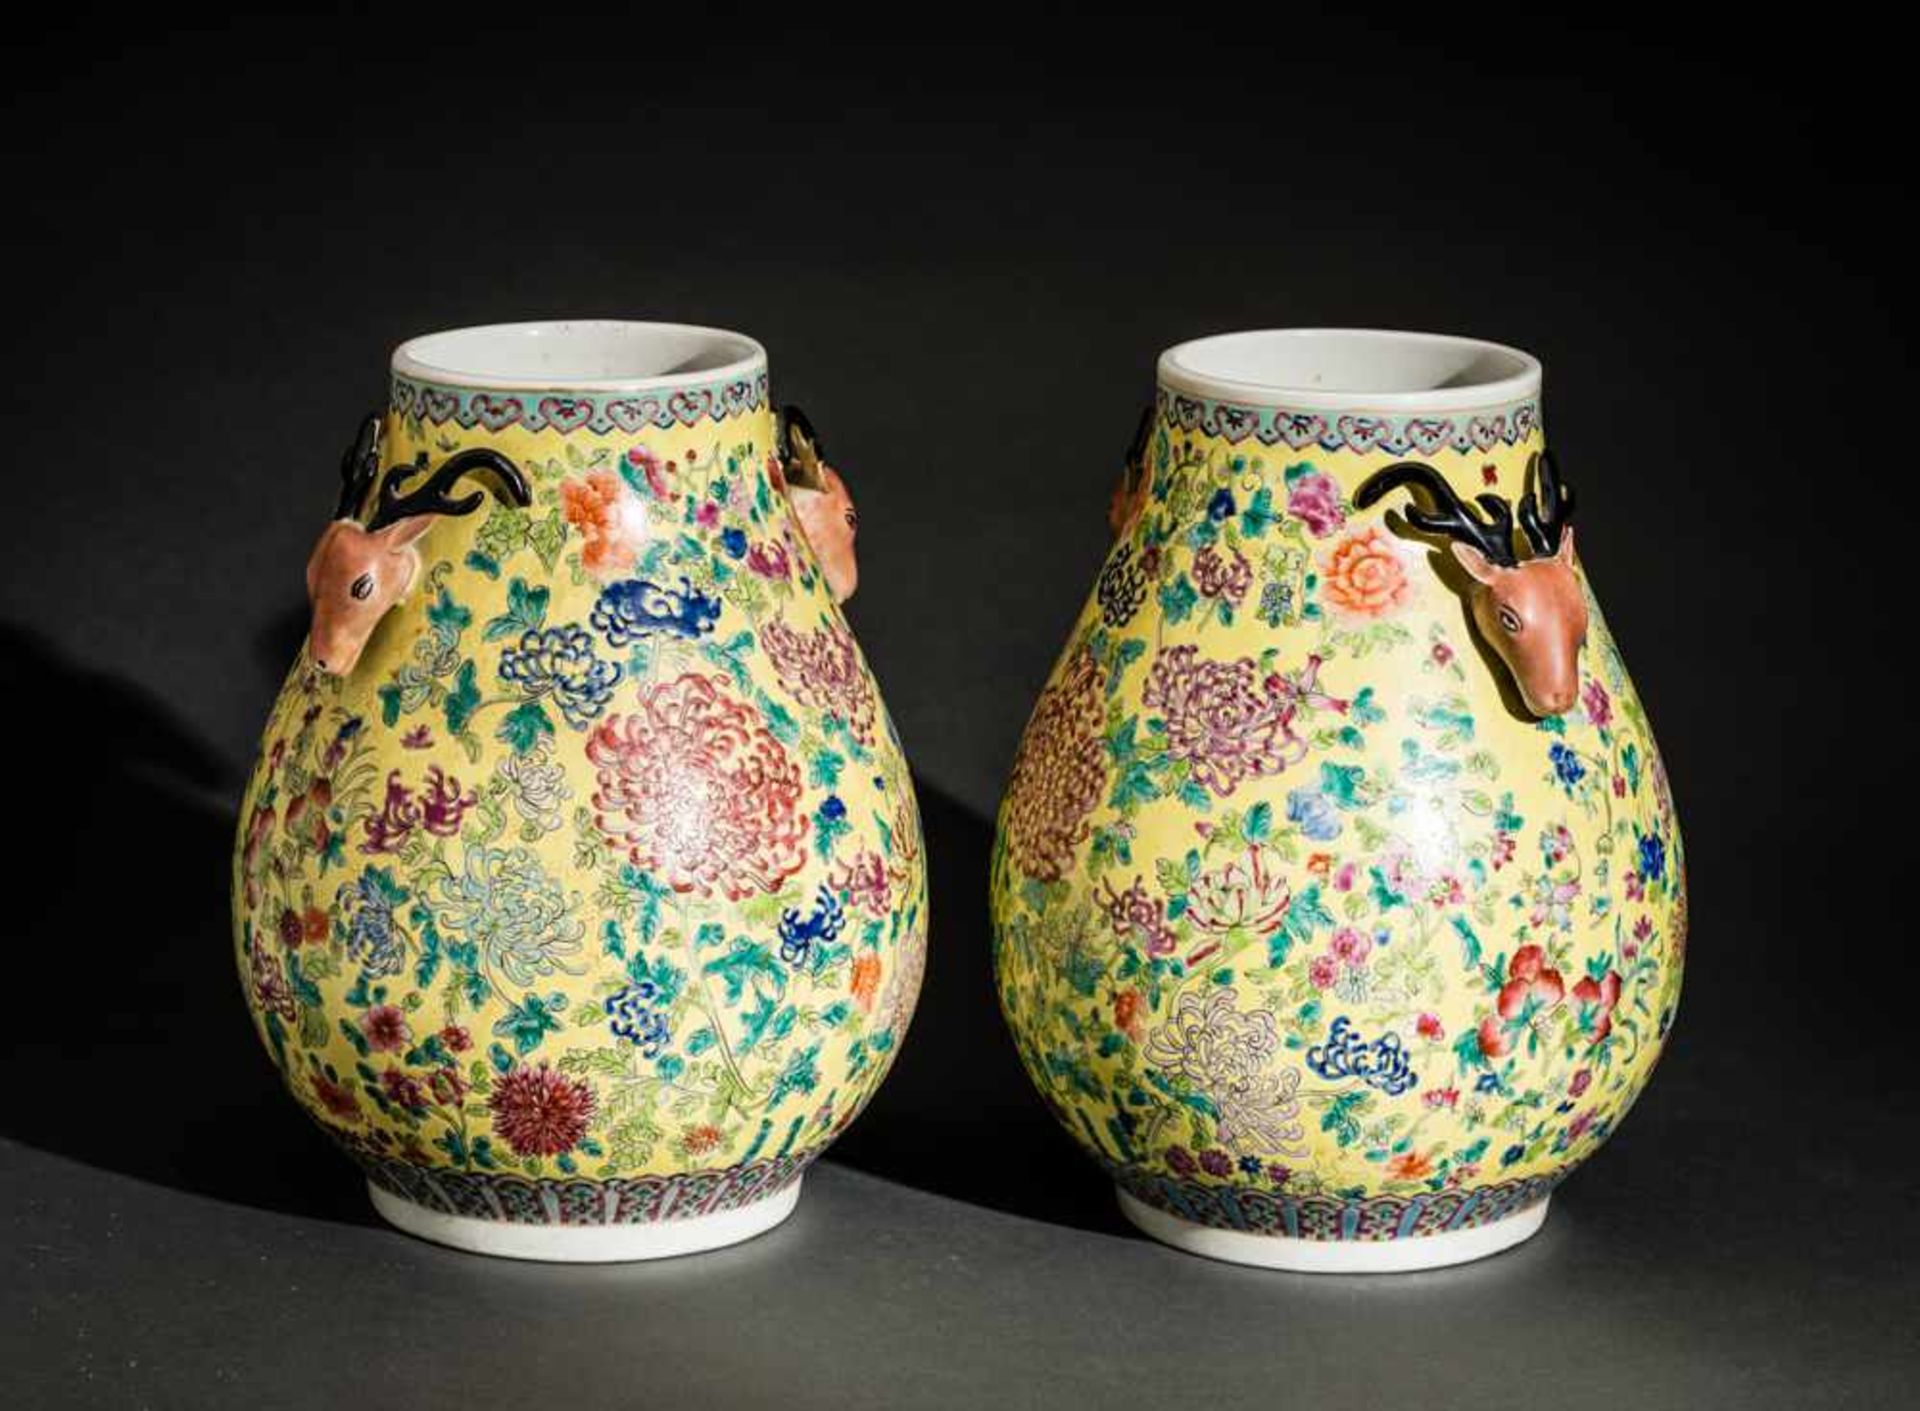 PAAR VASEN MIT KÖPFEN VON HIRSCHEN Porzellan mit Emaifarben, China. Im Stil der Qianlong-Zeit, - Image 4 of 6